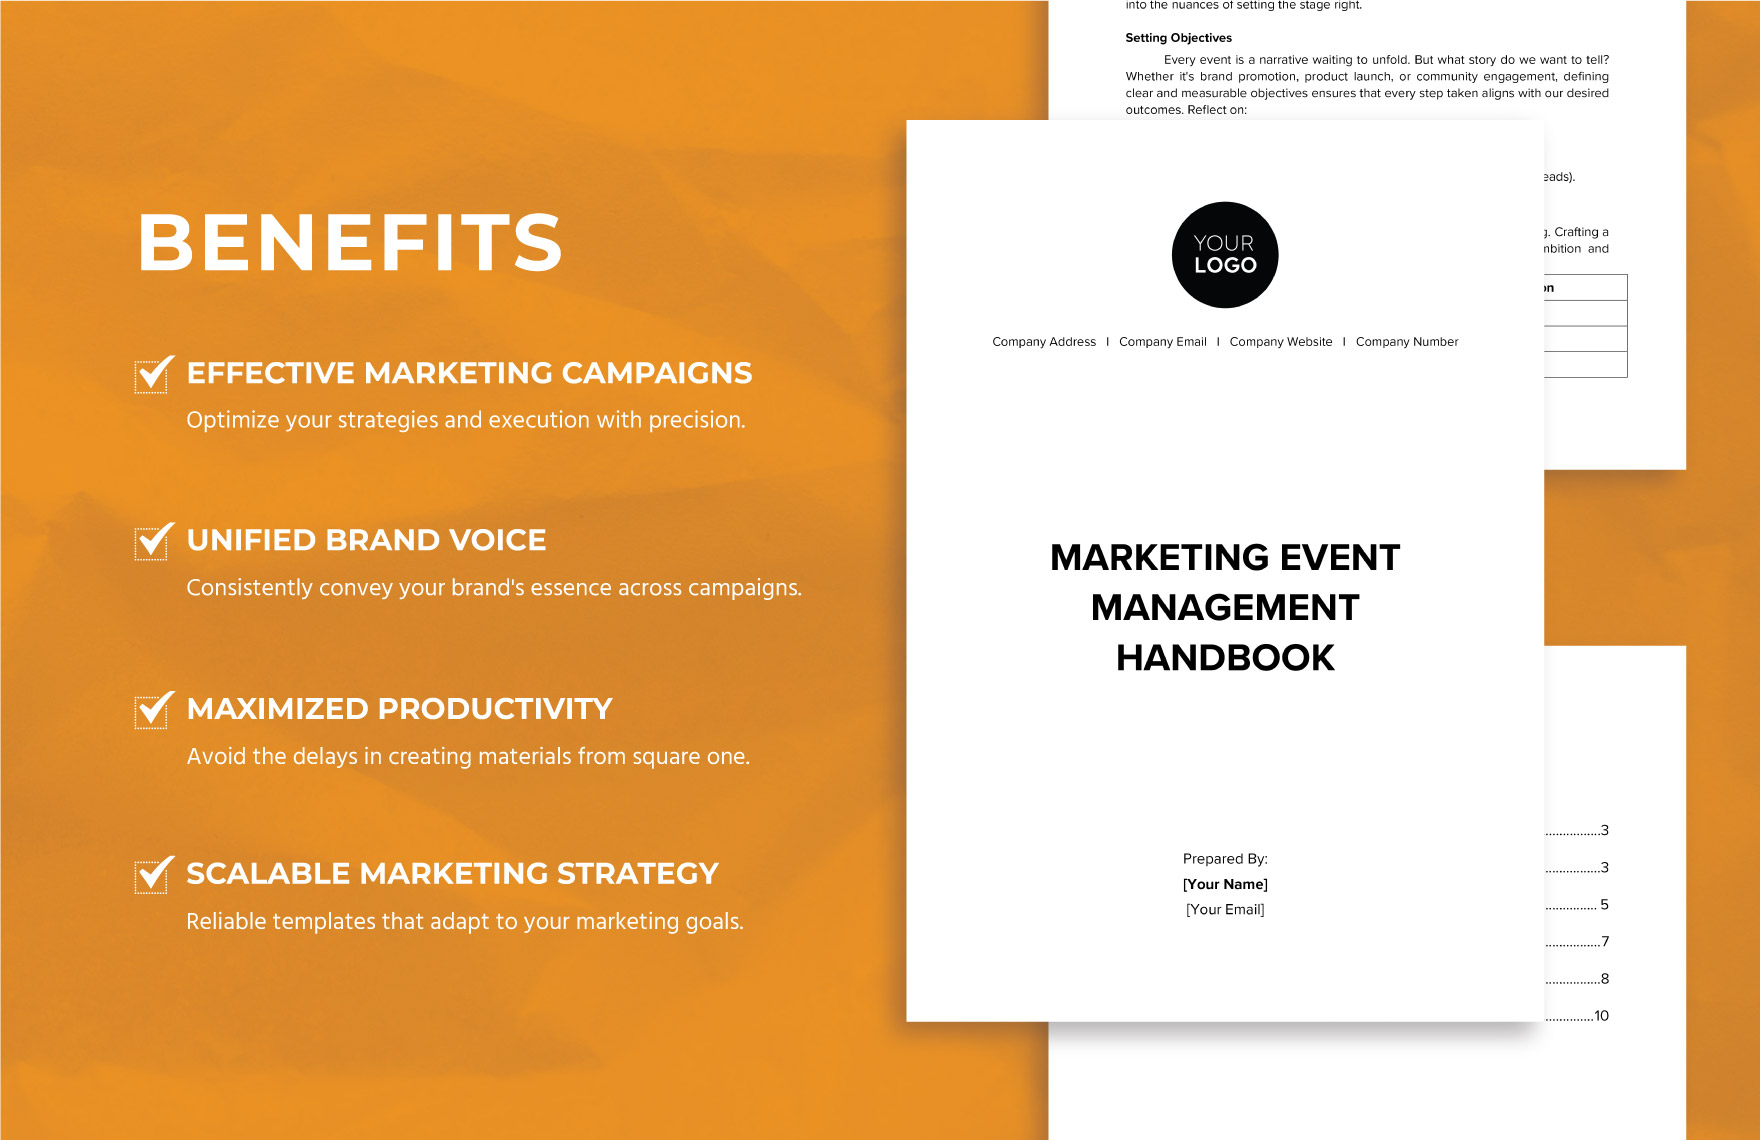 Marketing Event Management Handbook Template